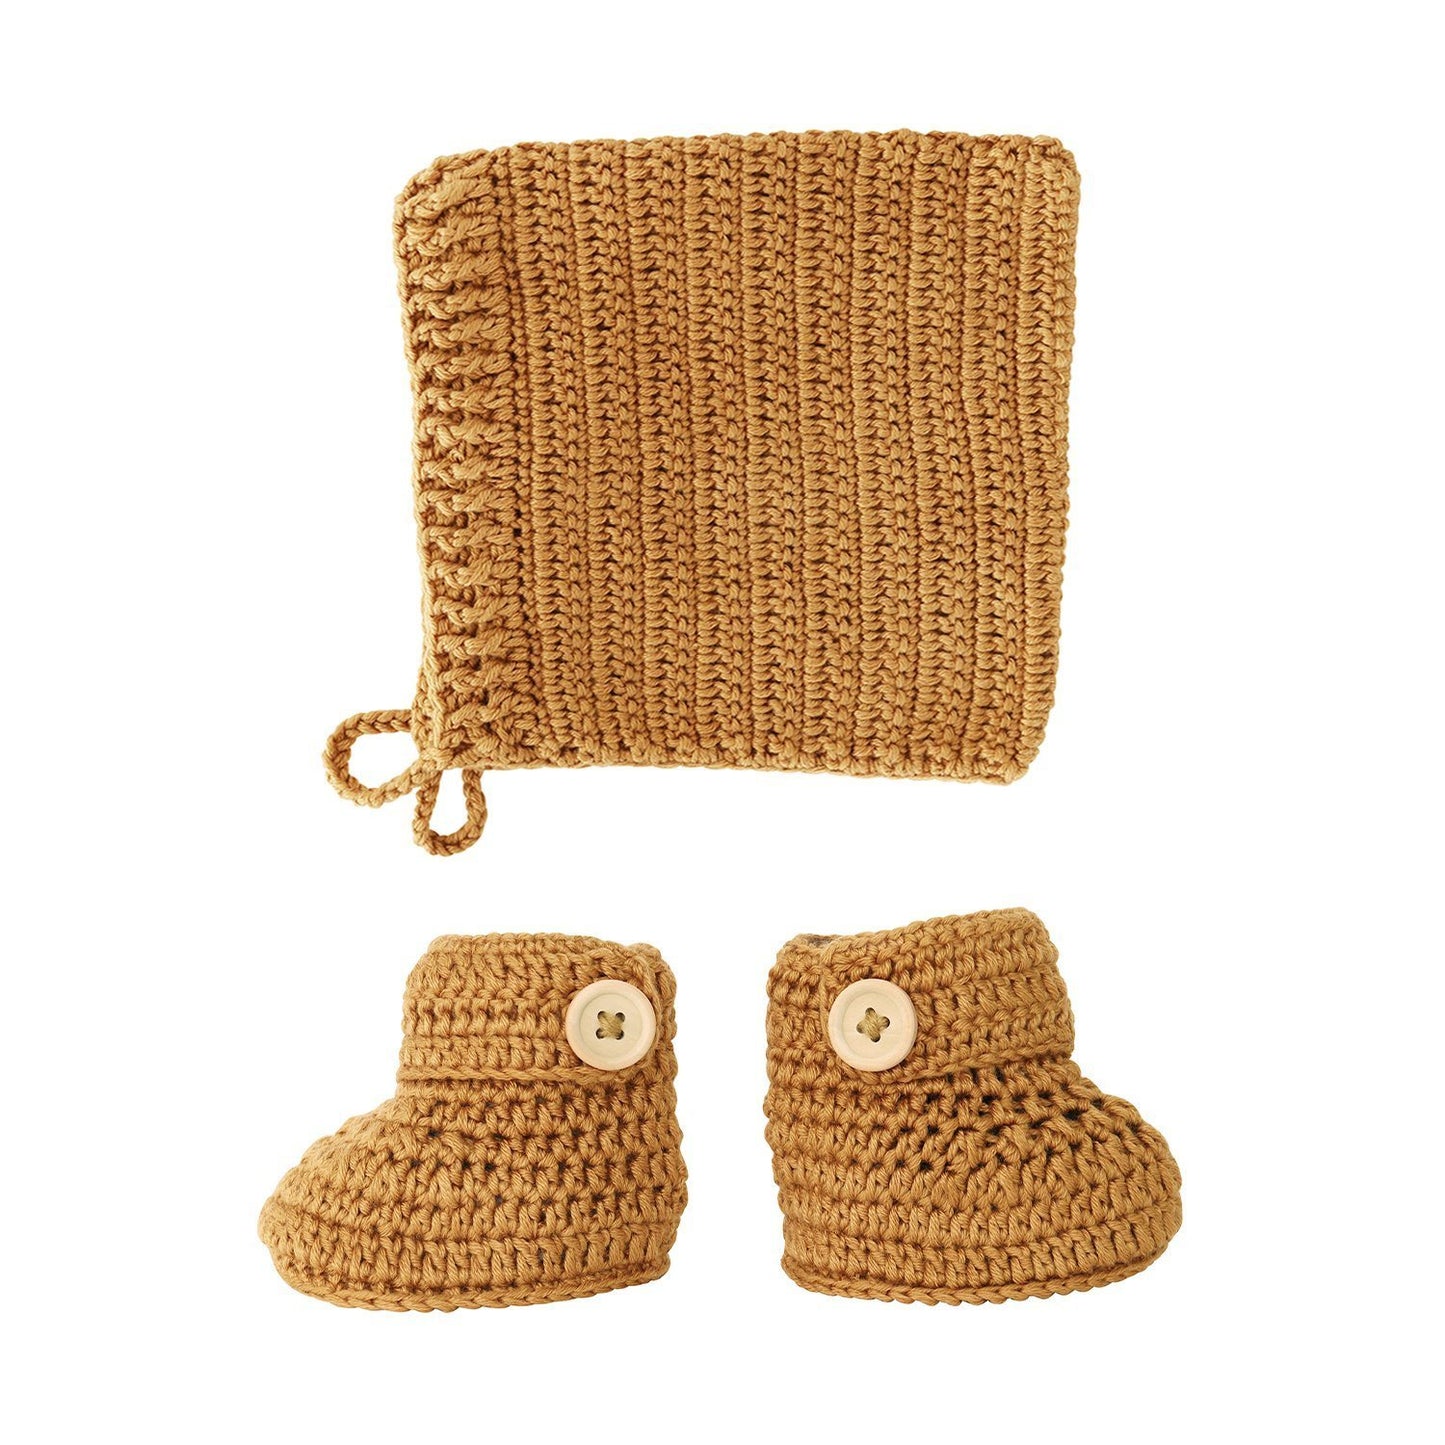 Cinnamon Crochet Bonnet and Bootie Set